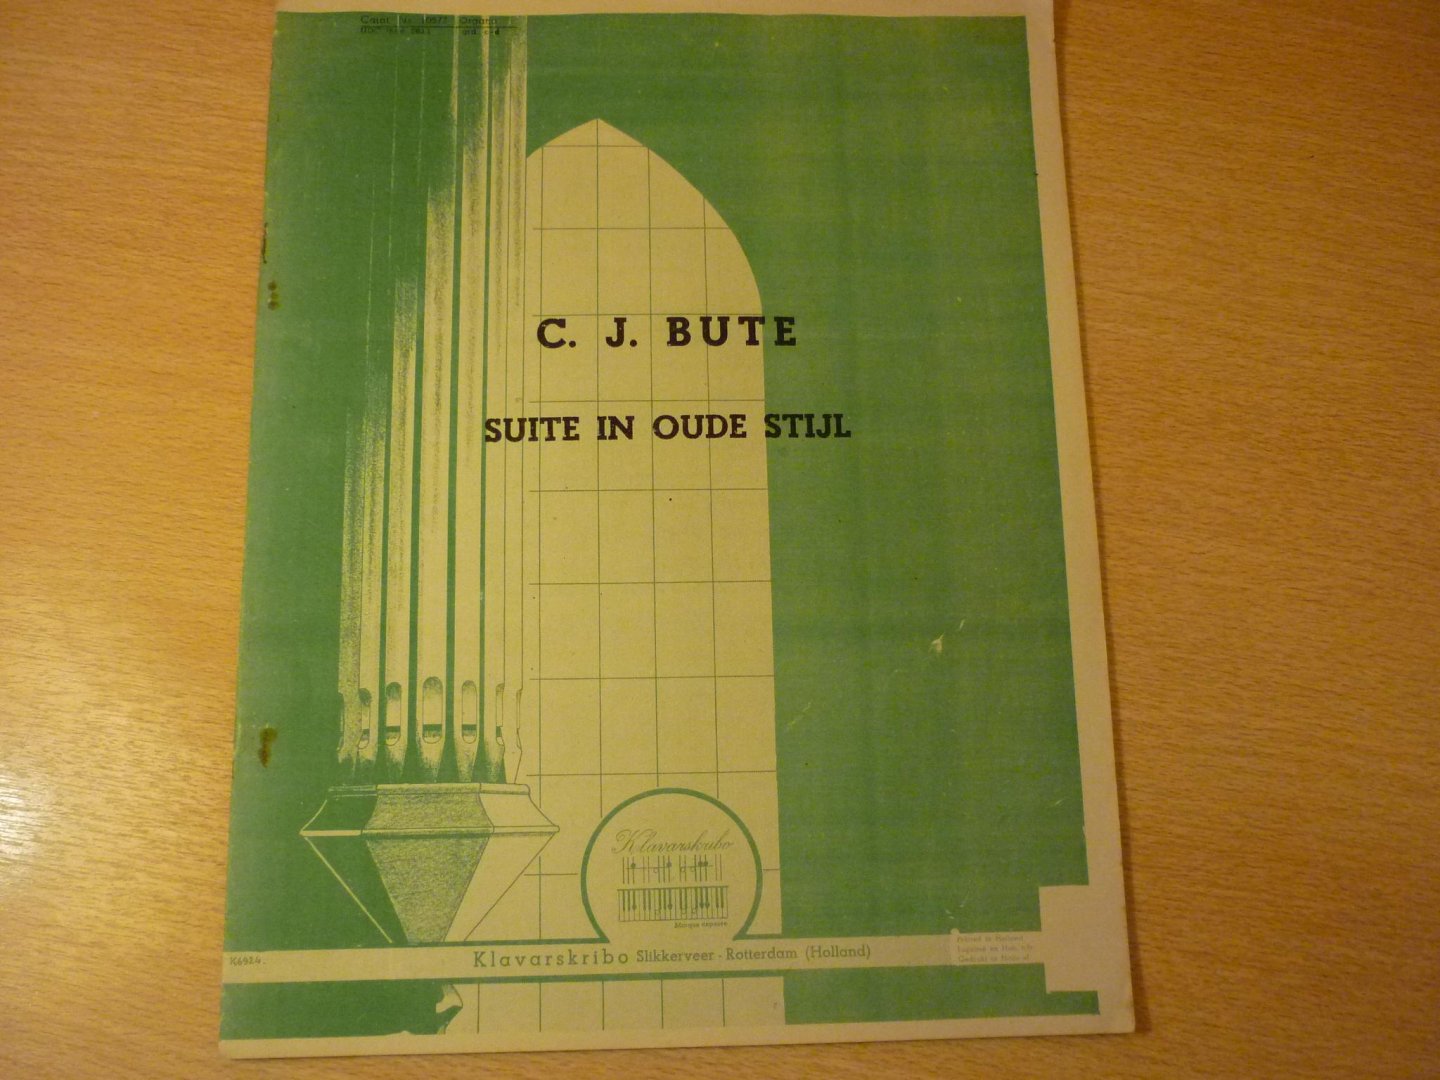 Bute; C.J. - Suite in oude stijl; (KLavarskribo)